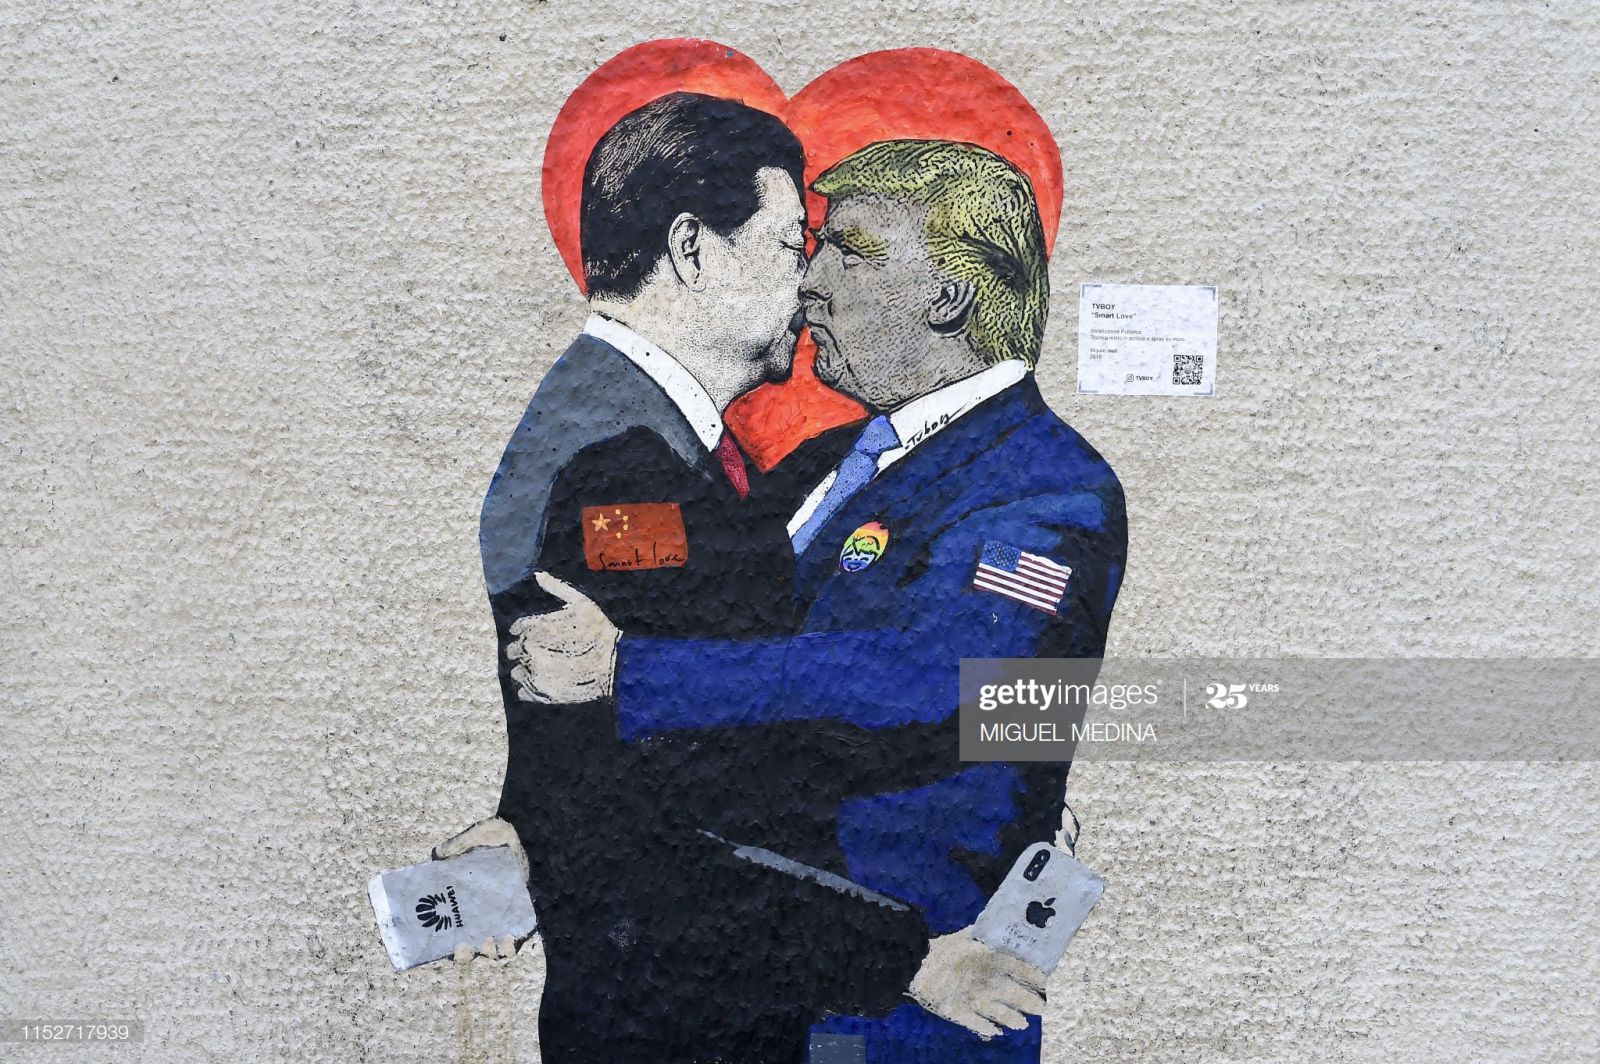 Một bức tranh tường mang tên “Tình yêu thông minh” của nghệ sĩ đường phố Ý, TvBoy được trưng bày trên một bức tường ở Milan.